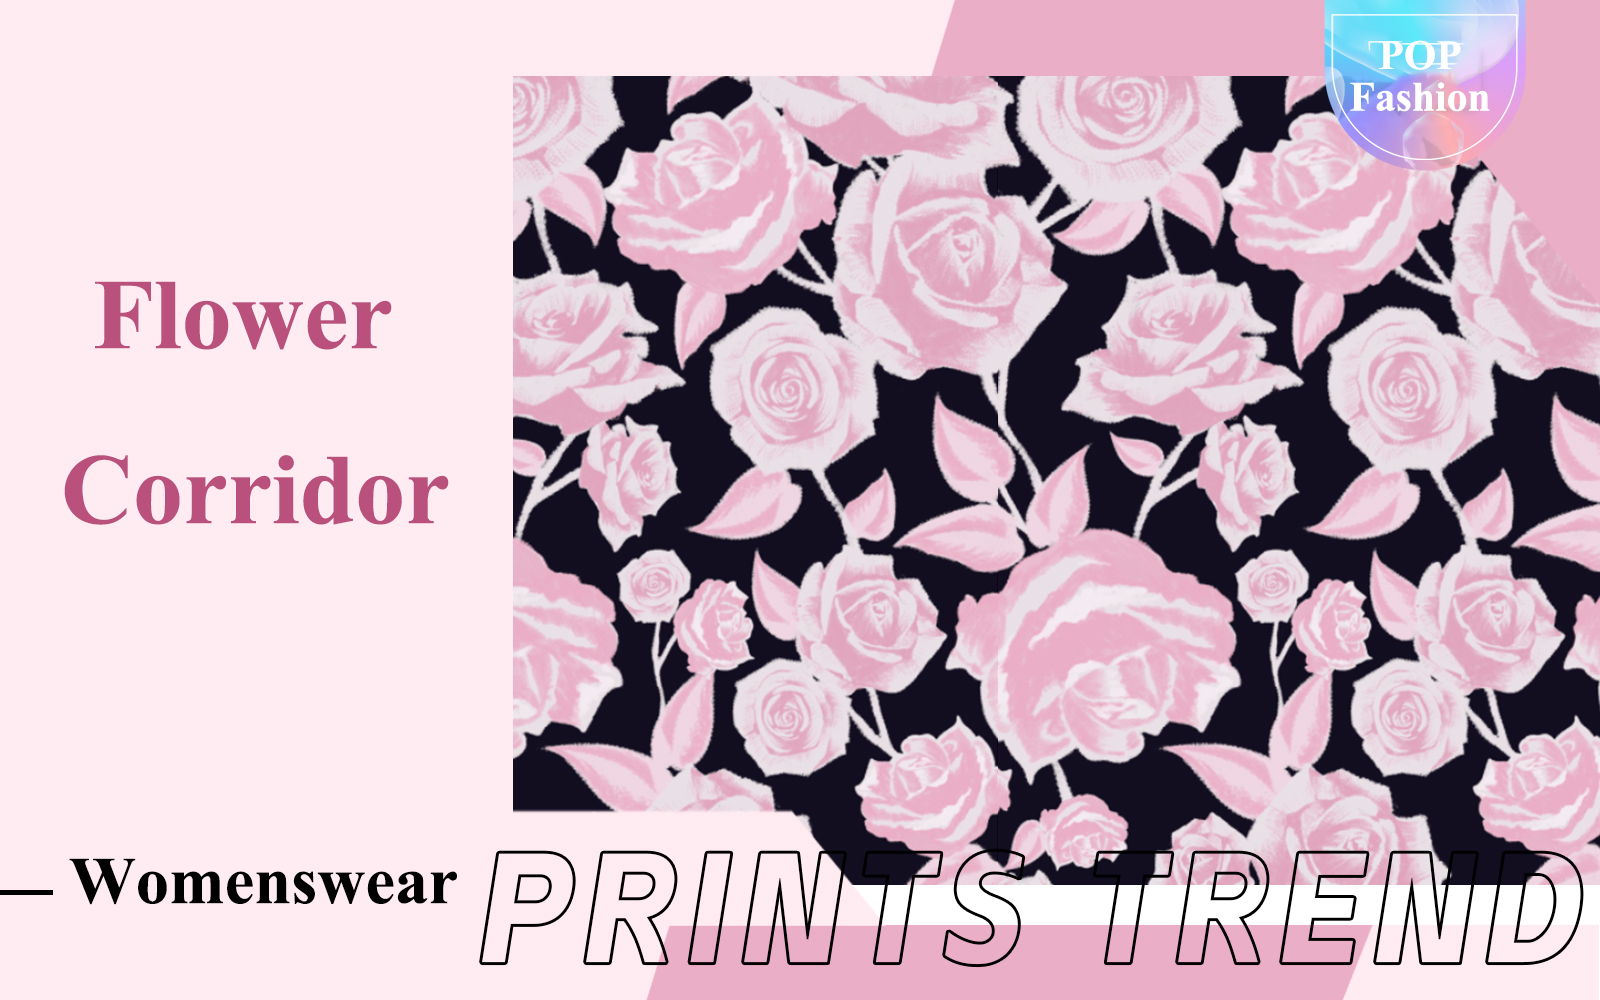 Flower Corridor -- The Pattern Trend for Womenswear